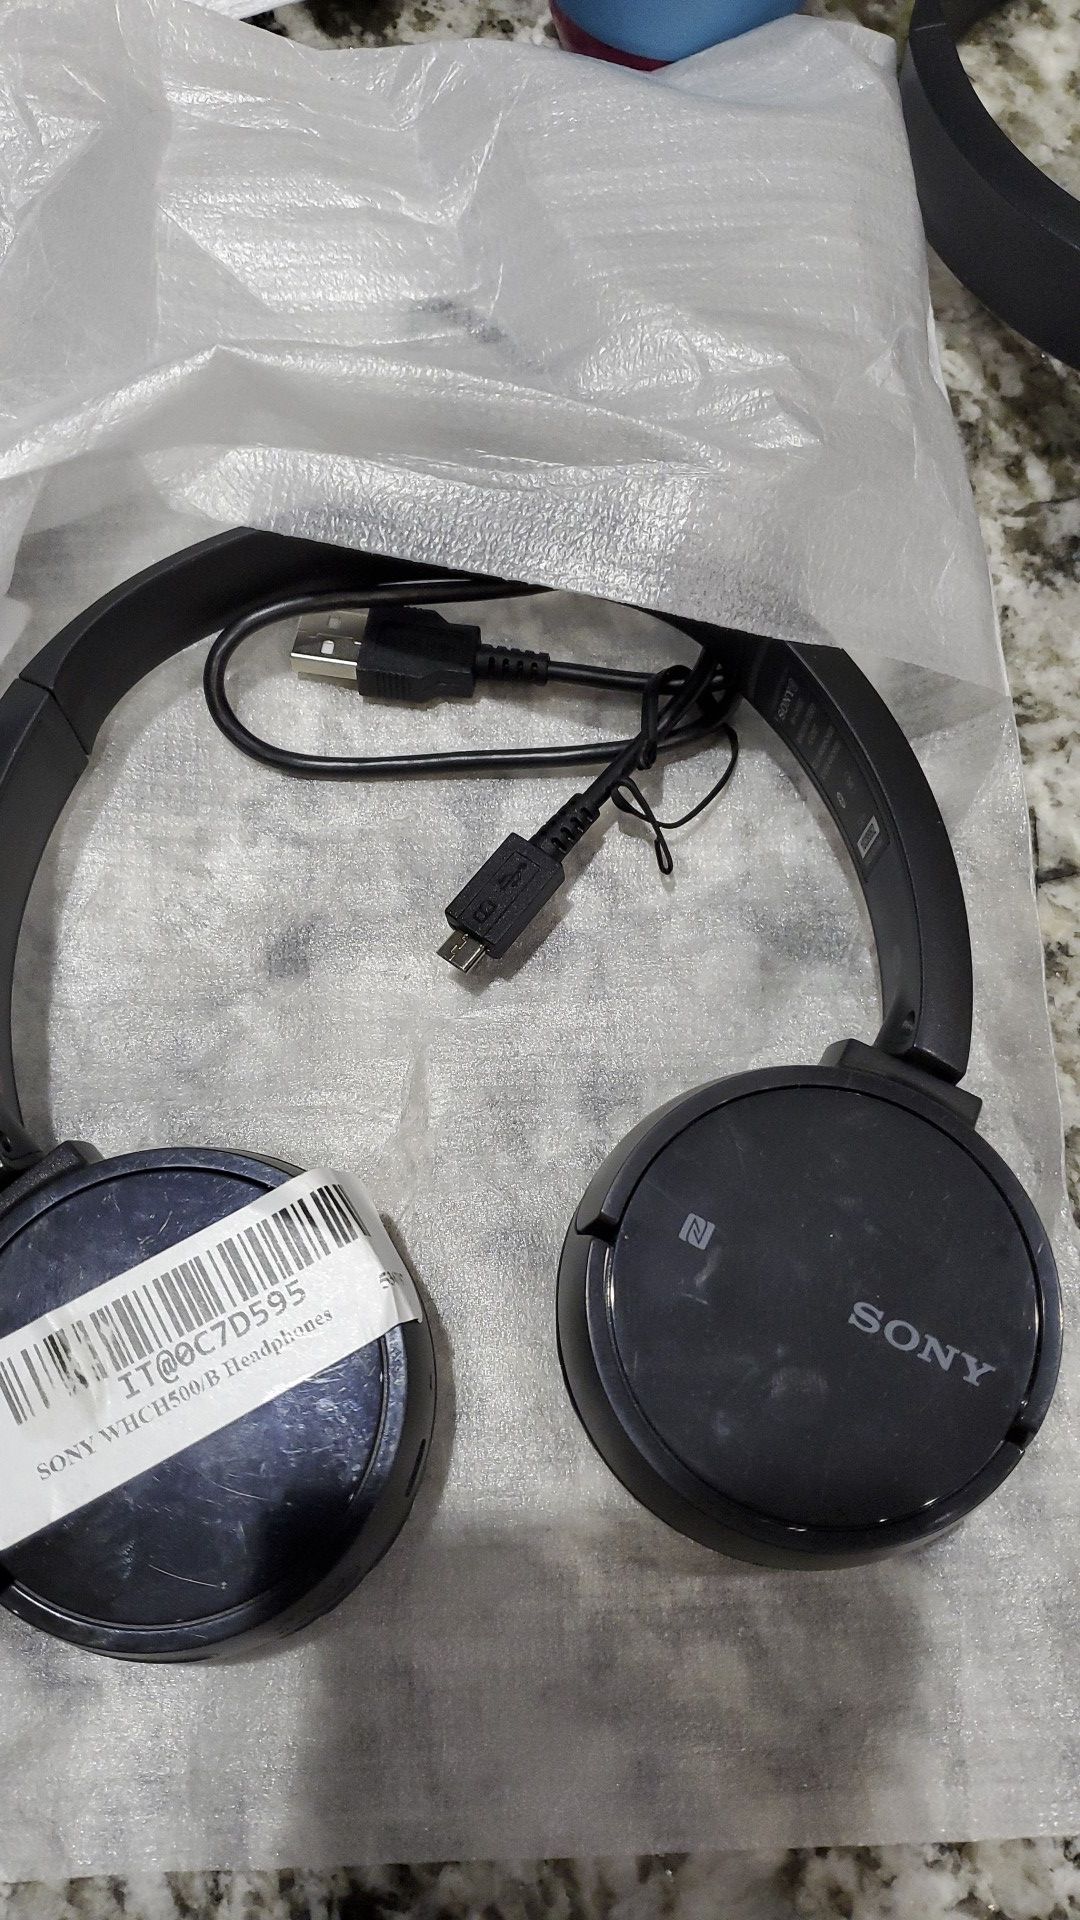 Sony Wireless Bluetooth headset